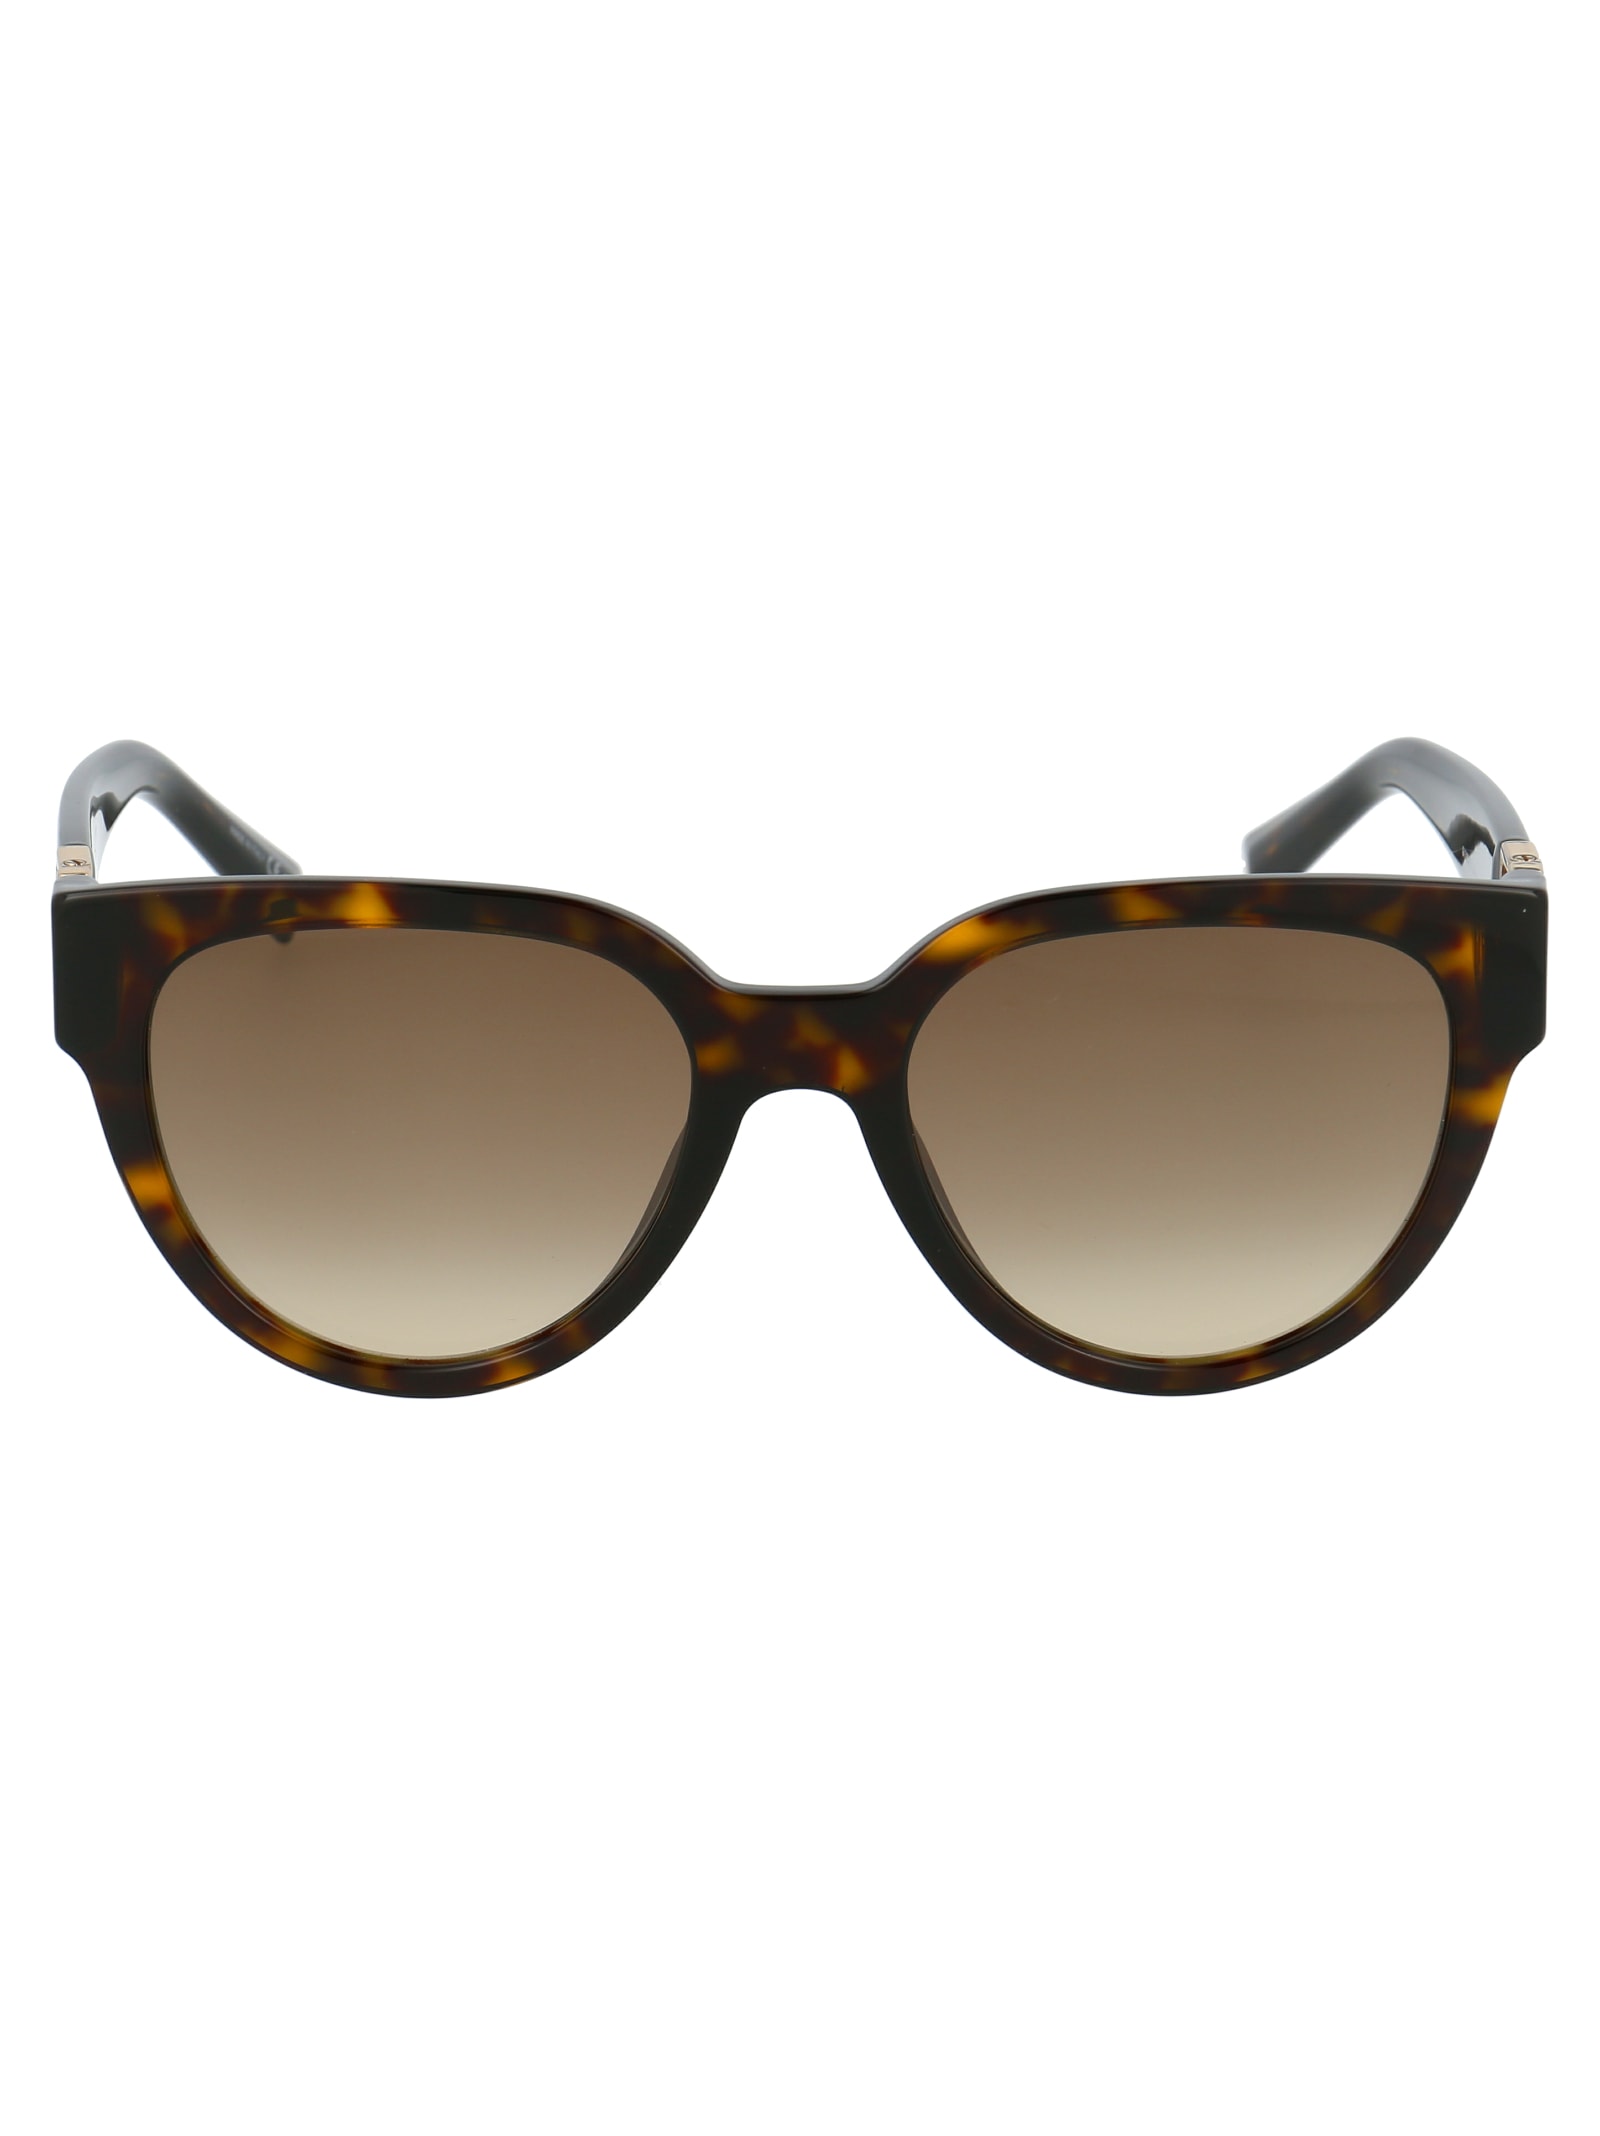 Givenchy Eyewear Gv 7155/g/s Sunglasses